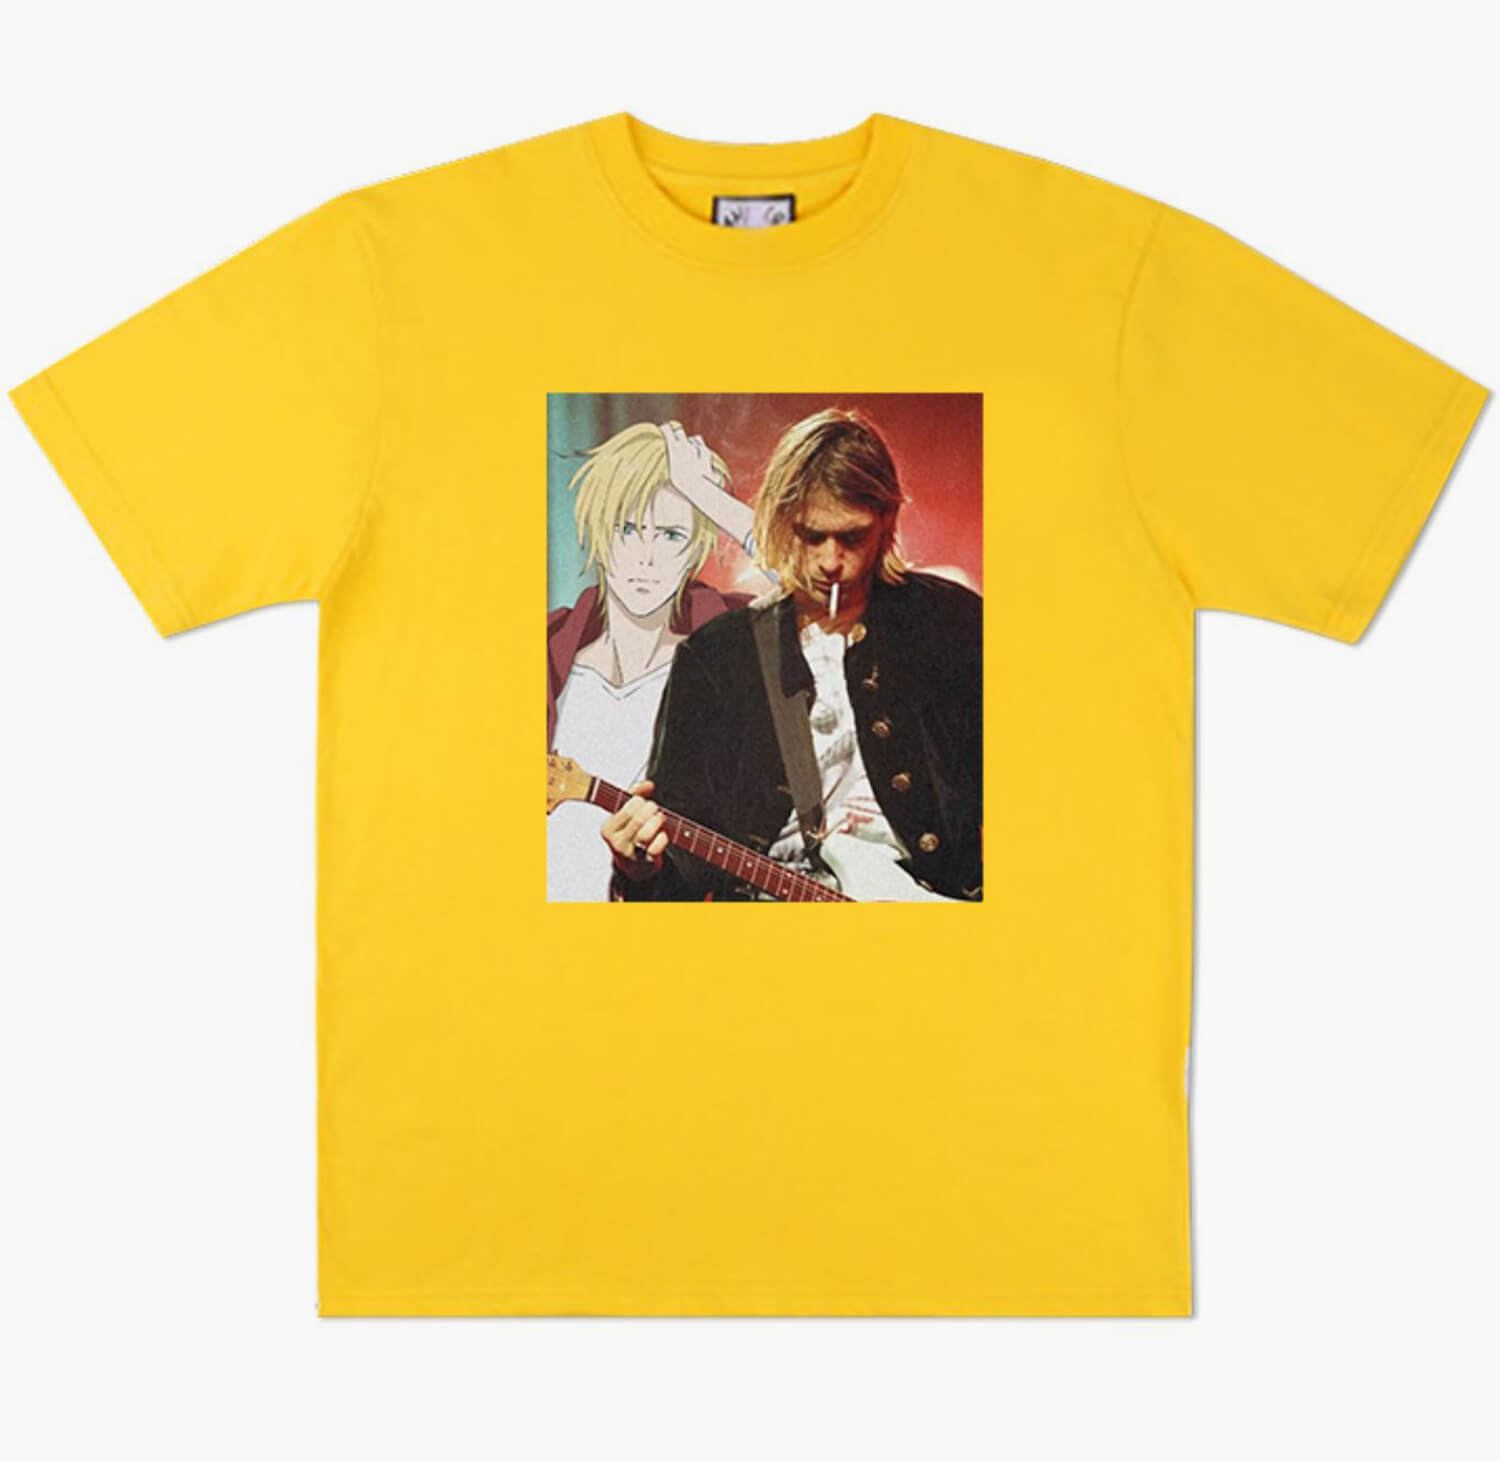 Anime Aesthetic Kurt Kobain T-Shirt Nirvana